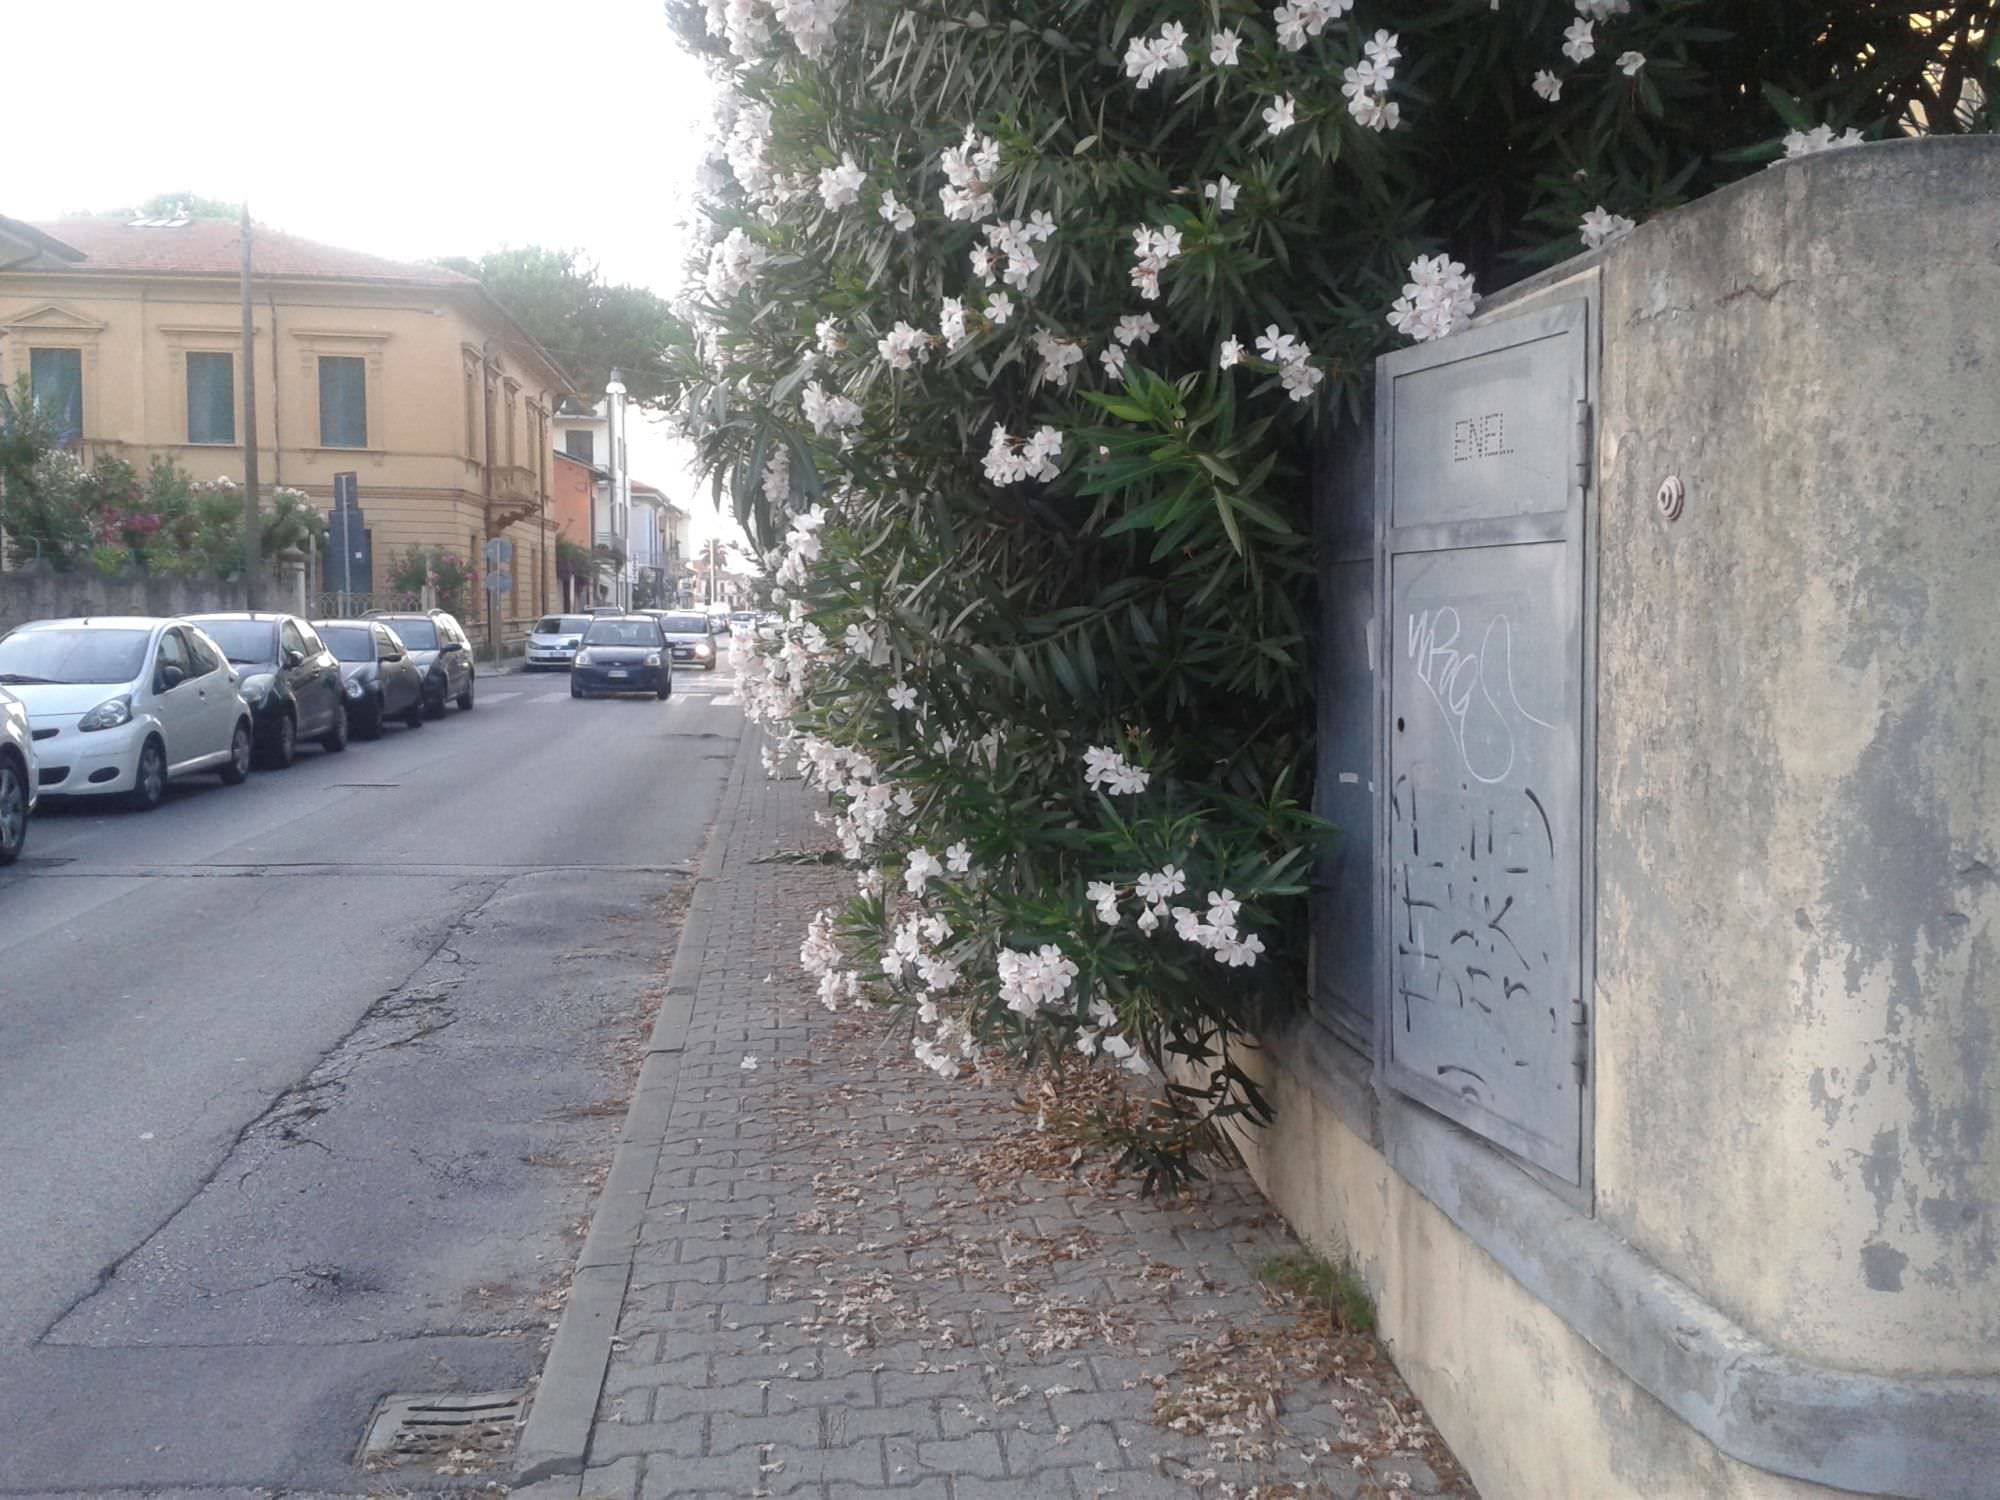 In via Trento le piante invadono il marciapiede. Pedoni “dirottati” in strada